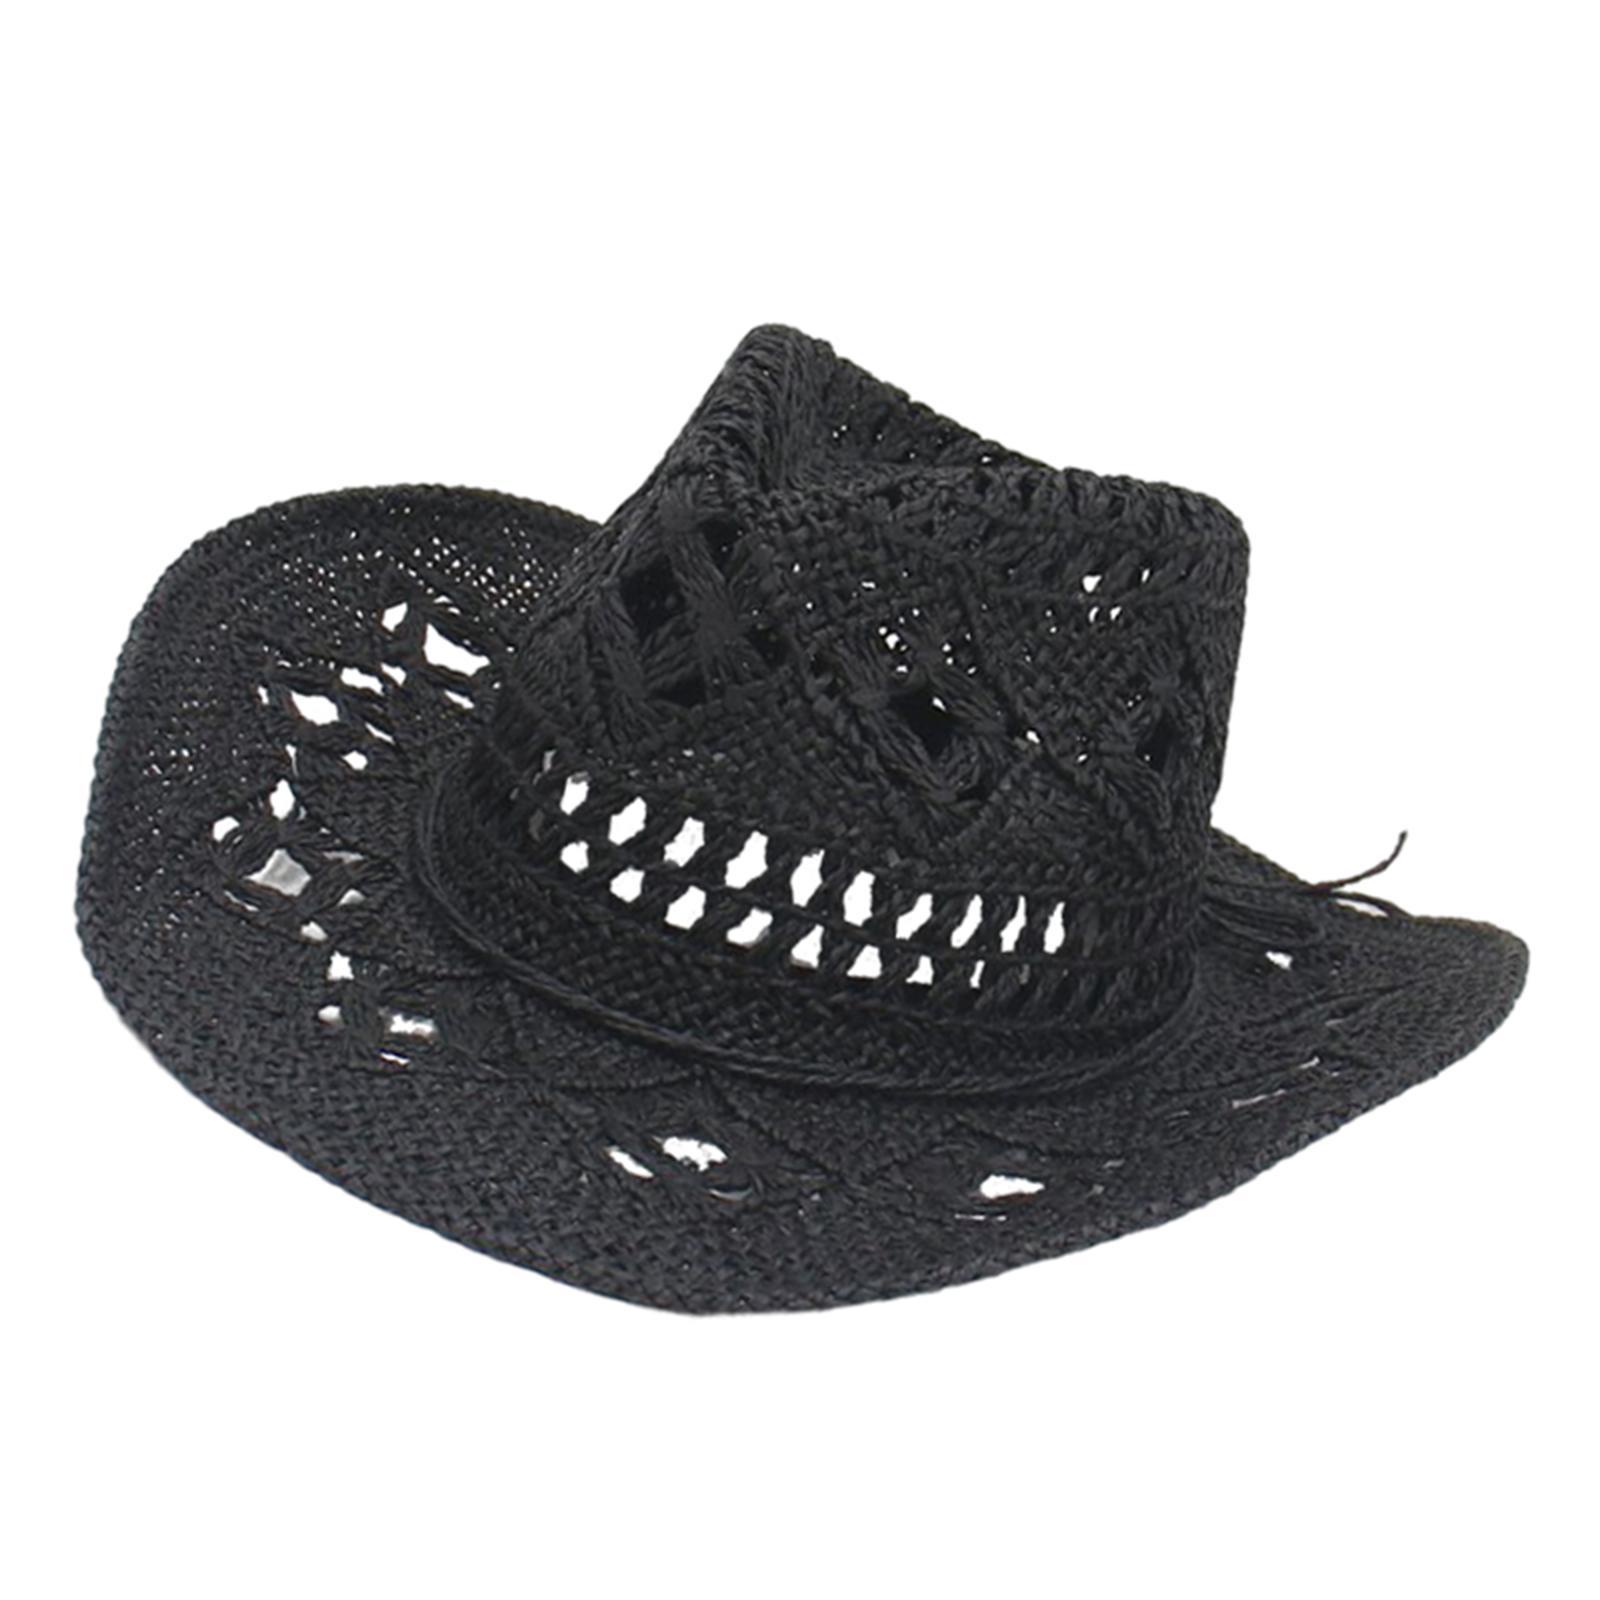 Straw Western Cowboy Hat Wide Brim Sun Hat Floppy Beach Hat for Outdoor